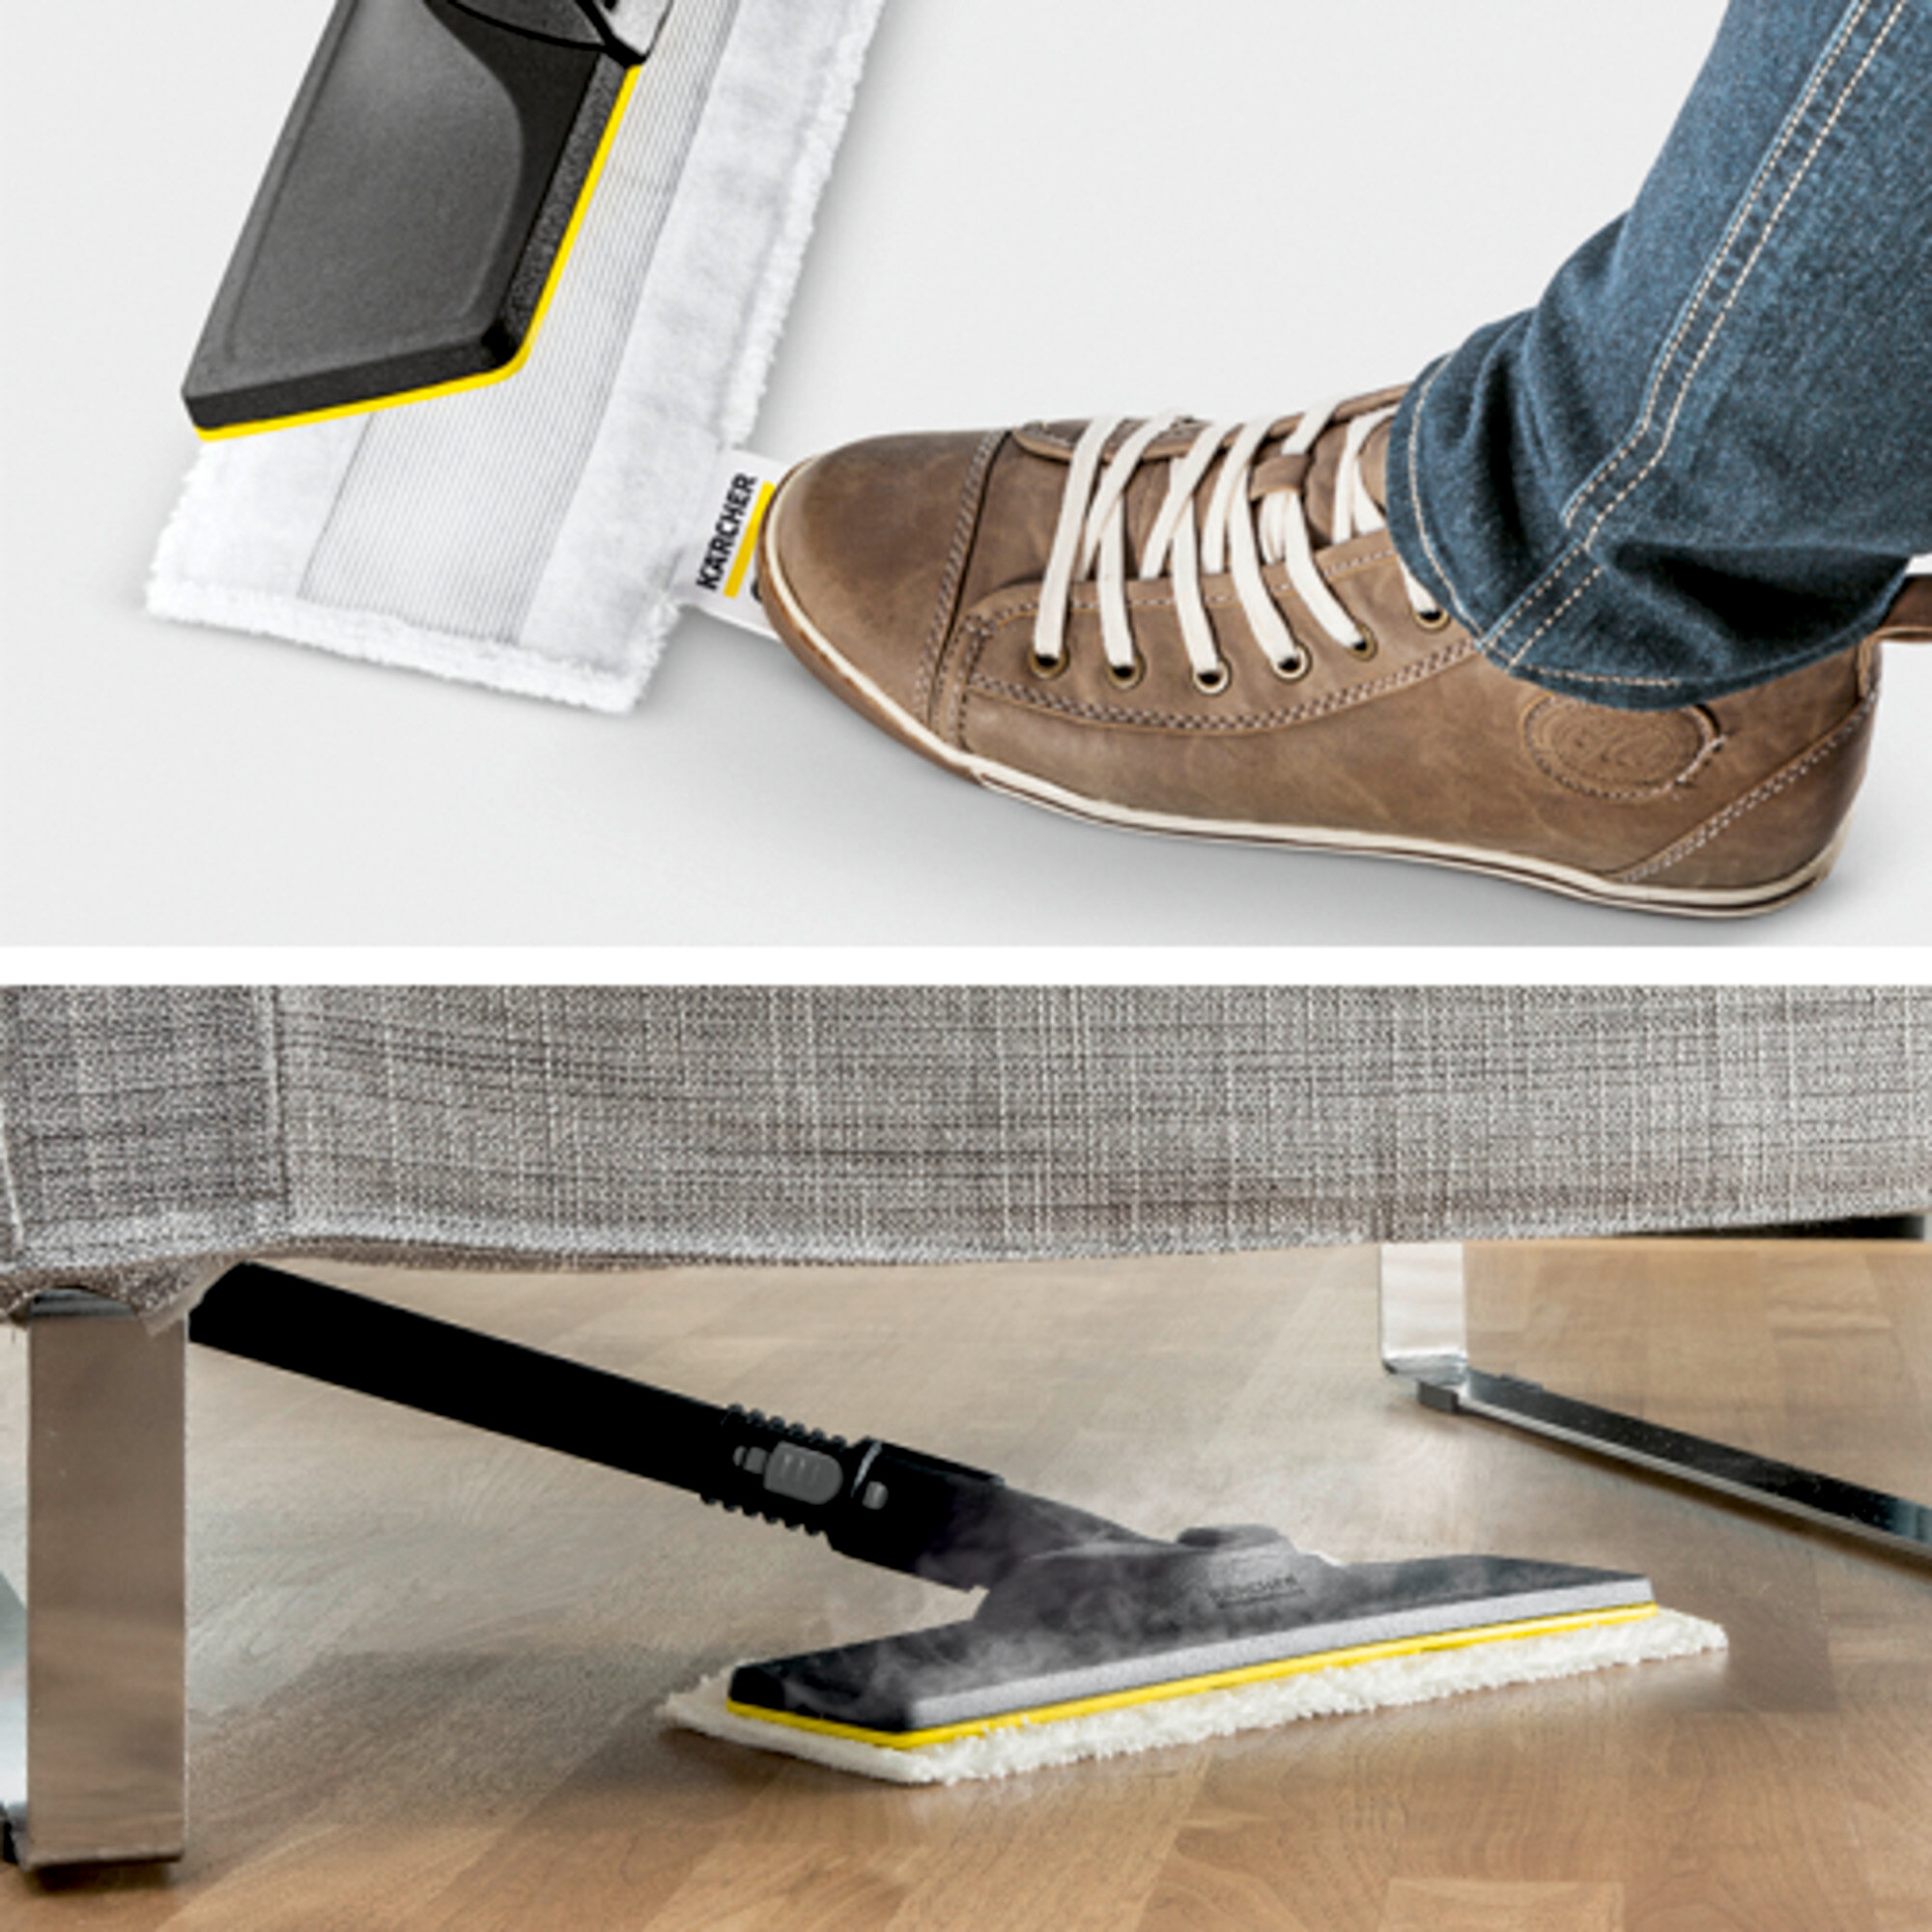 Parný čistič Parný čistič SC 1 EasyFix Premium: Súprava na čistenie podlahy EasyFix s flexibilným kĺbom na podlahovej hubici a pohodlným suchým zipsom na upevnenie utierky na podlahu